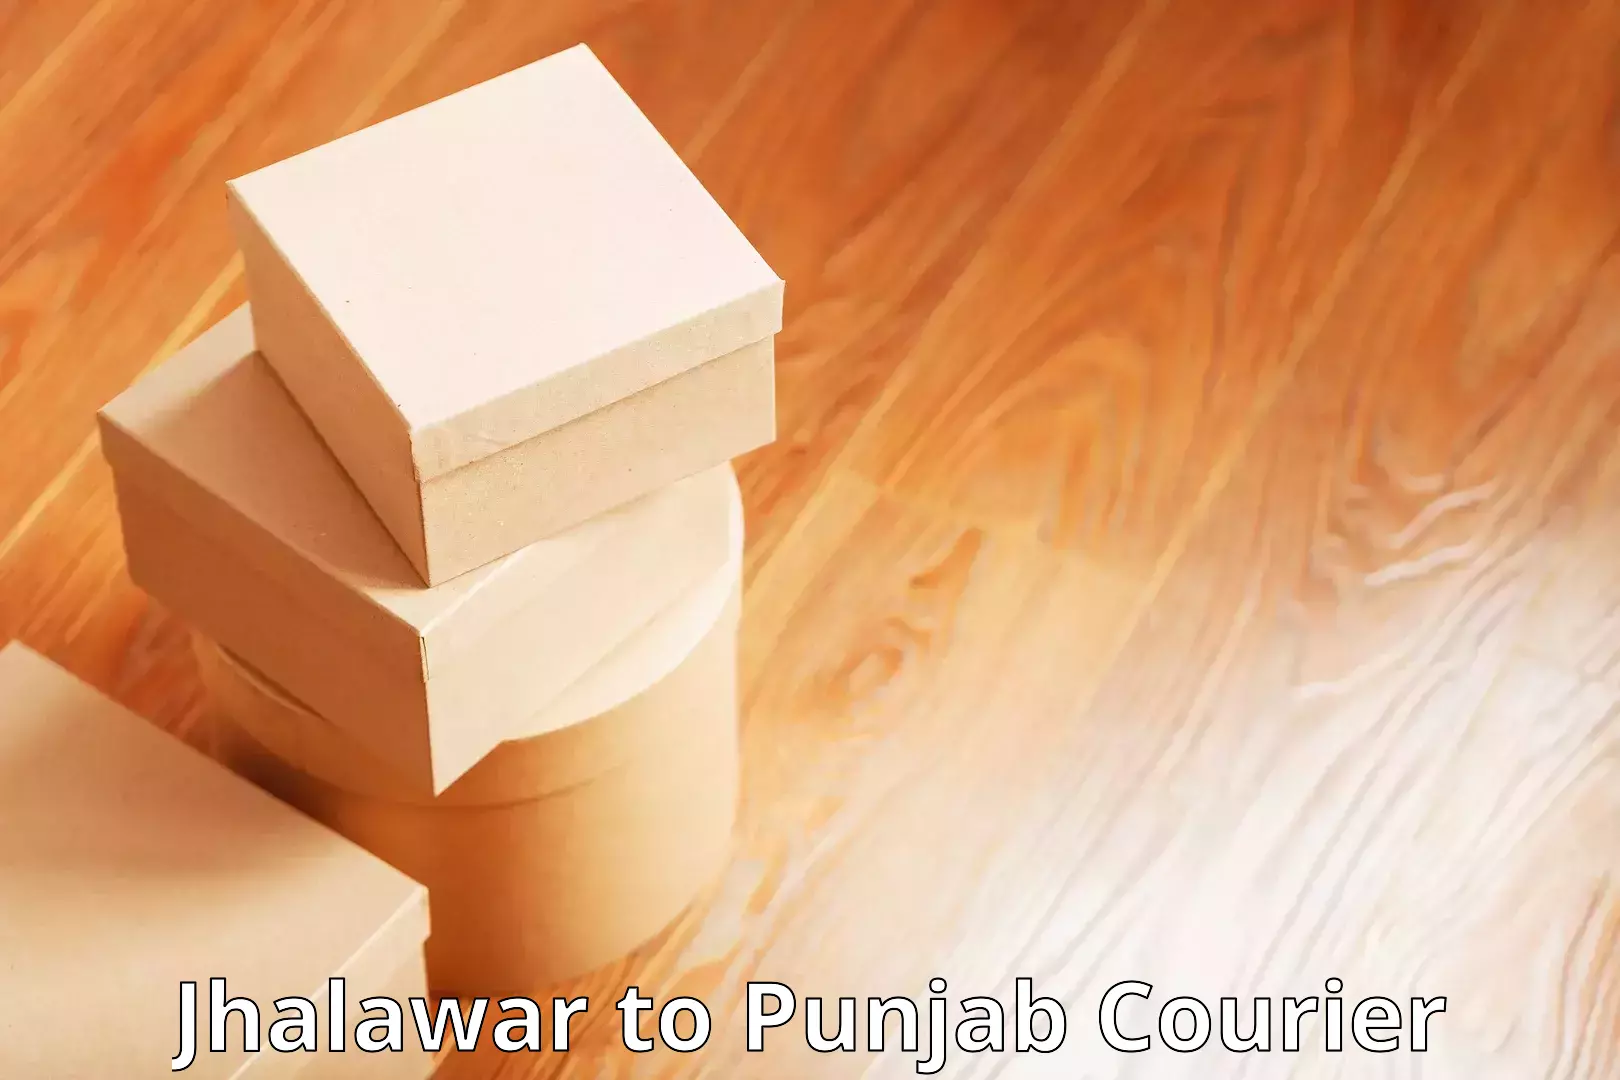 Efficient parcel delivery Jhalawar to IIT Ropar